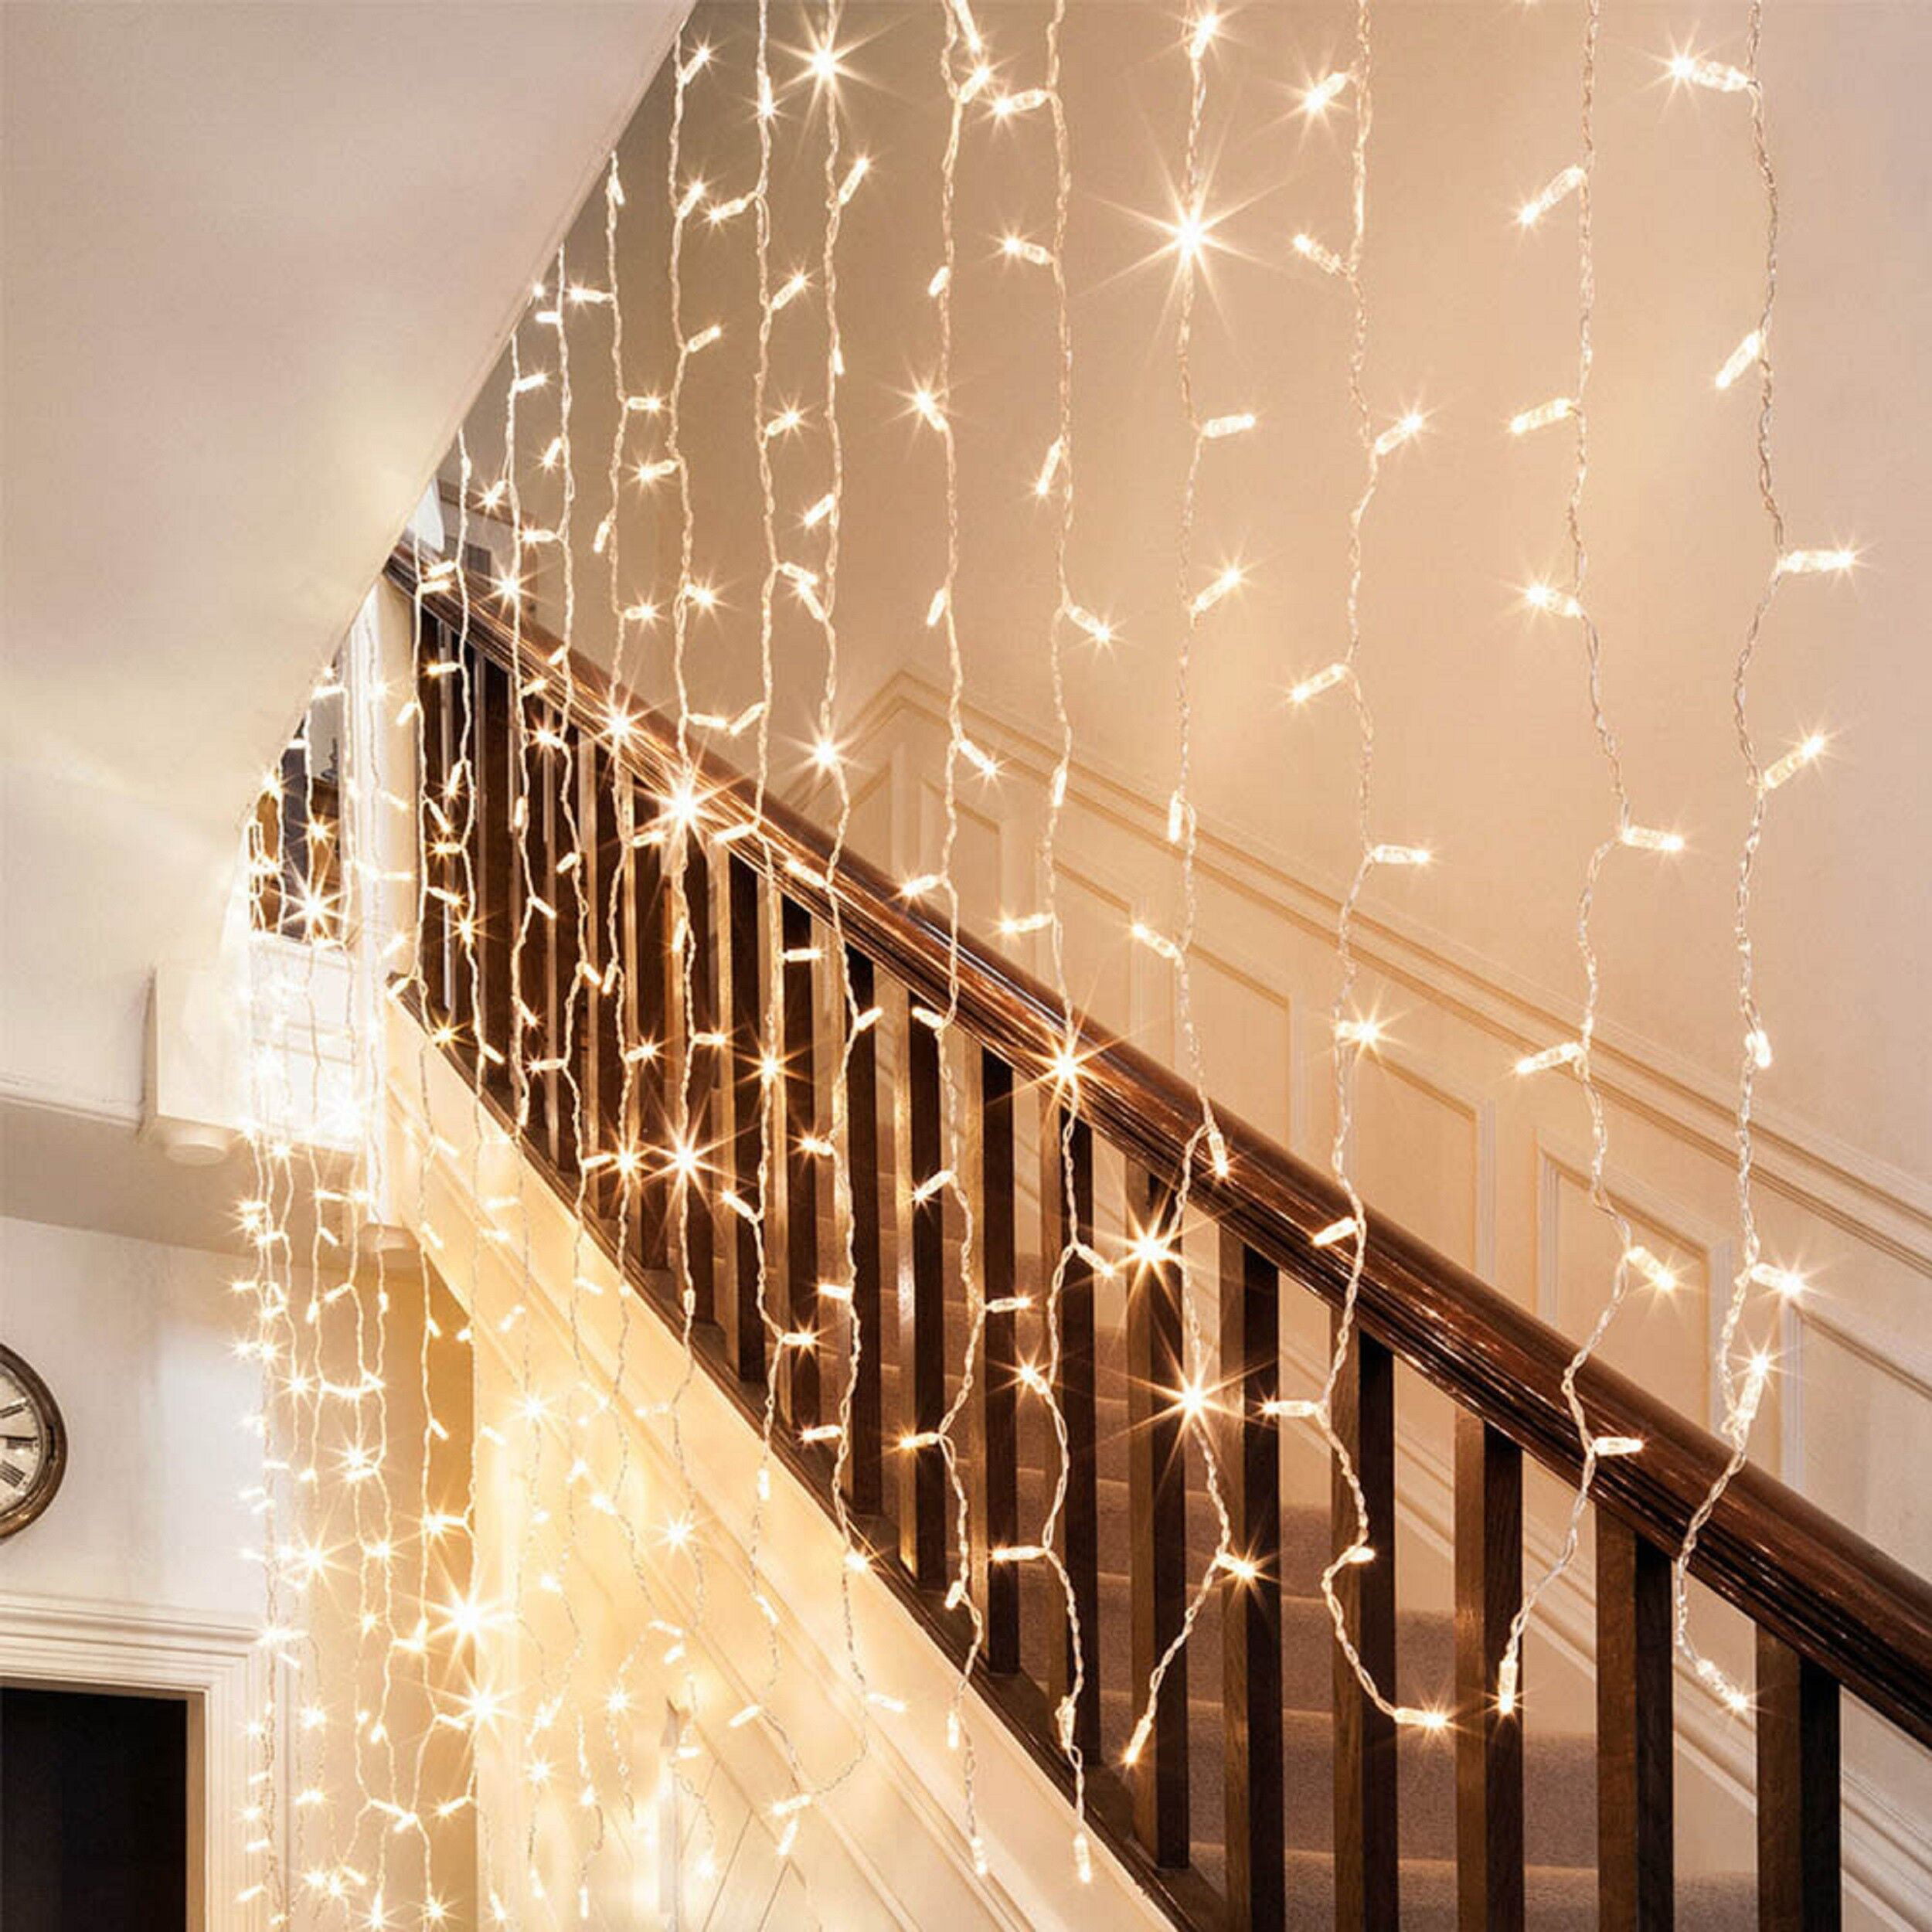 Torchstar Extendable Led Christmas String Lights For Bedroom